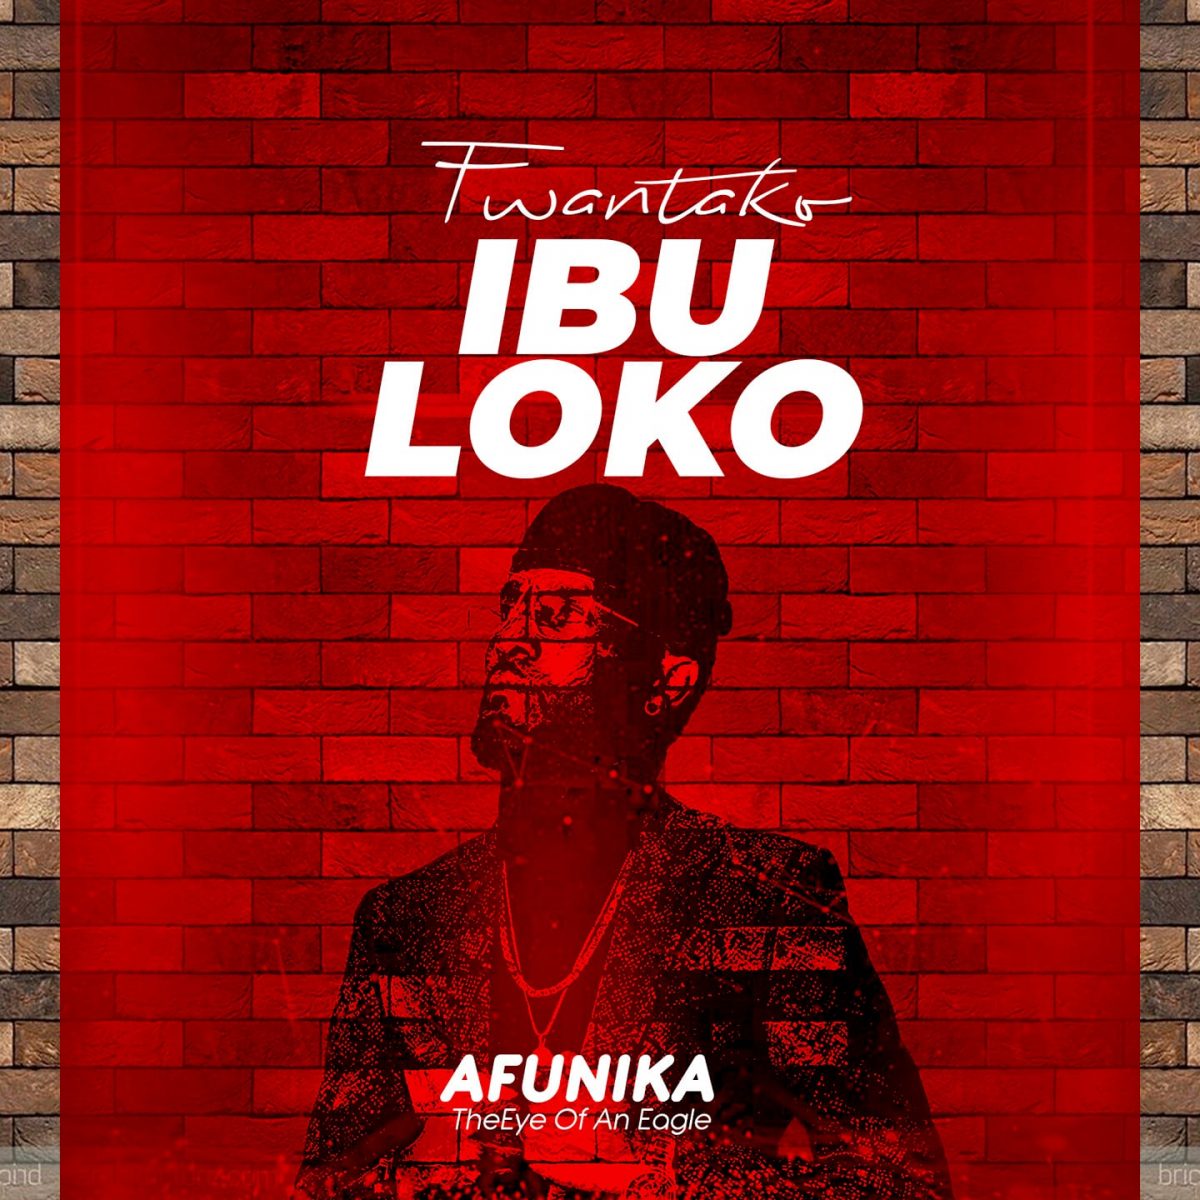 Afunika – Fwantako Ibuloko Mp3 Download